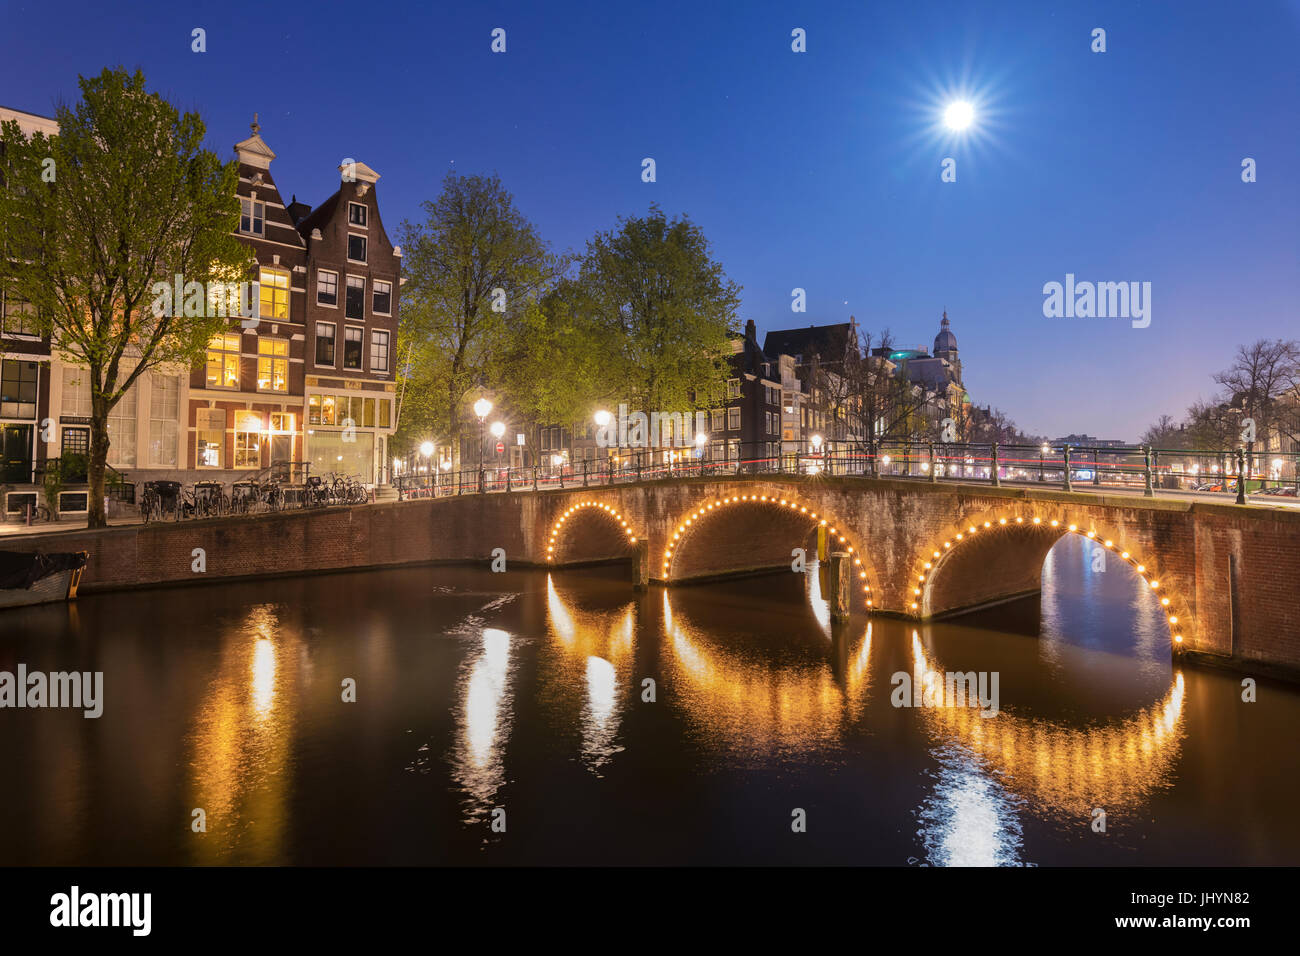 La luce del tramonto su tipici palazzi e ponti si riflette in un tipico canale, Amsterdam, Olanda (Paesi Bassi), Europa Foto Stock